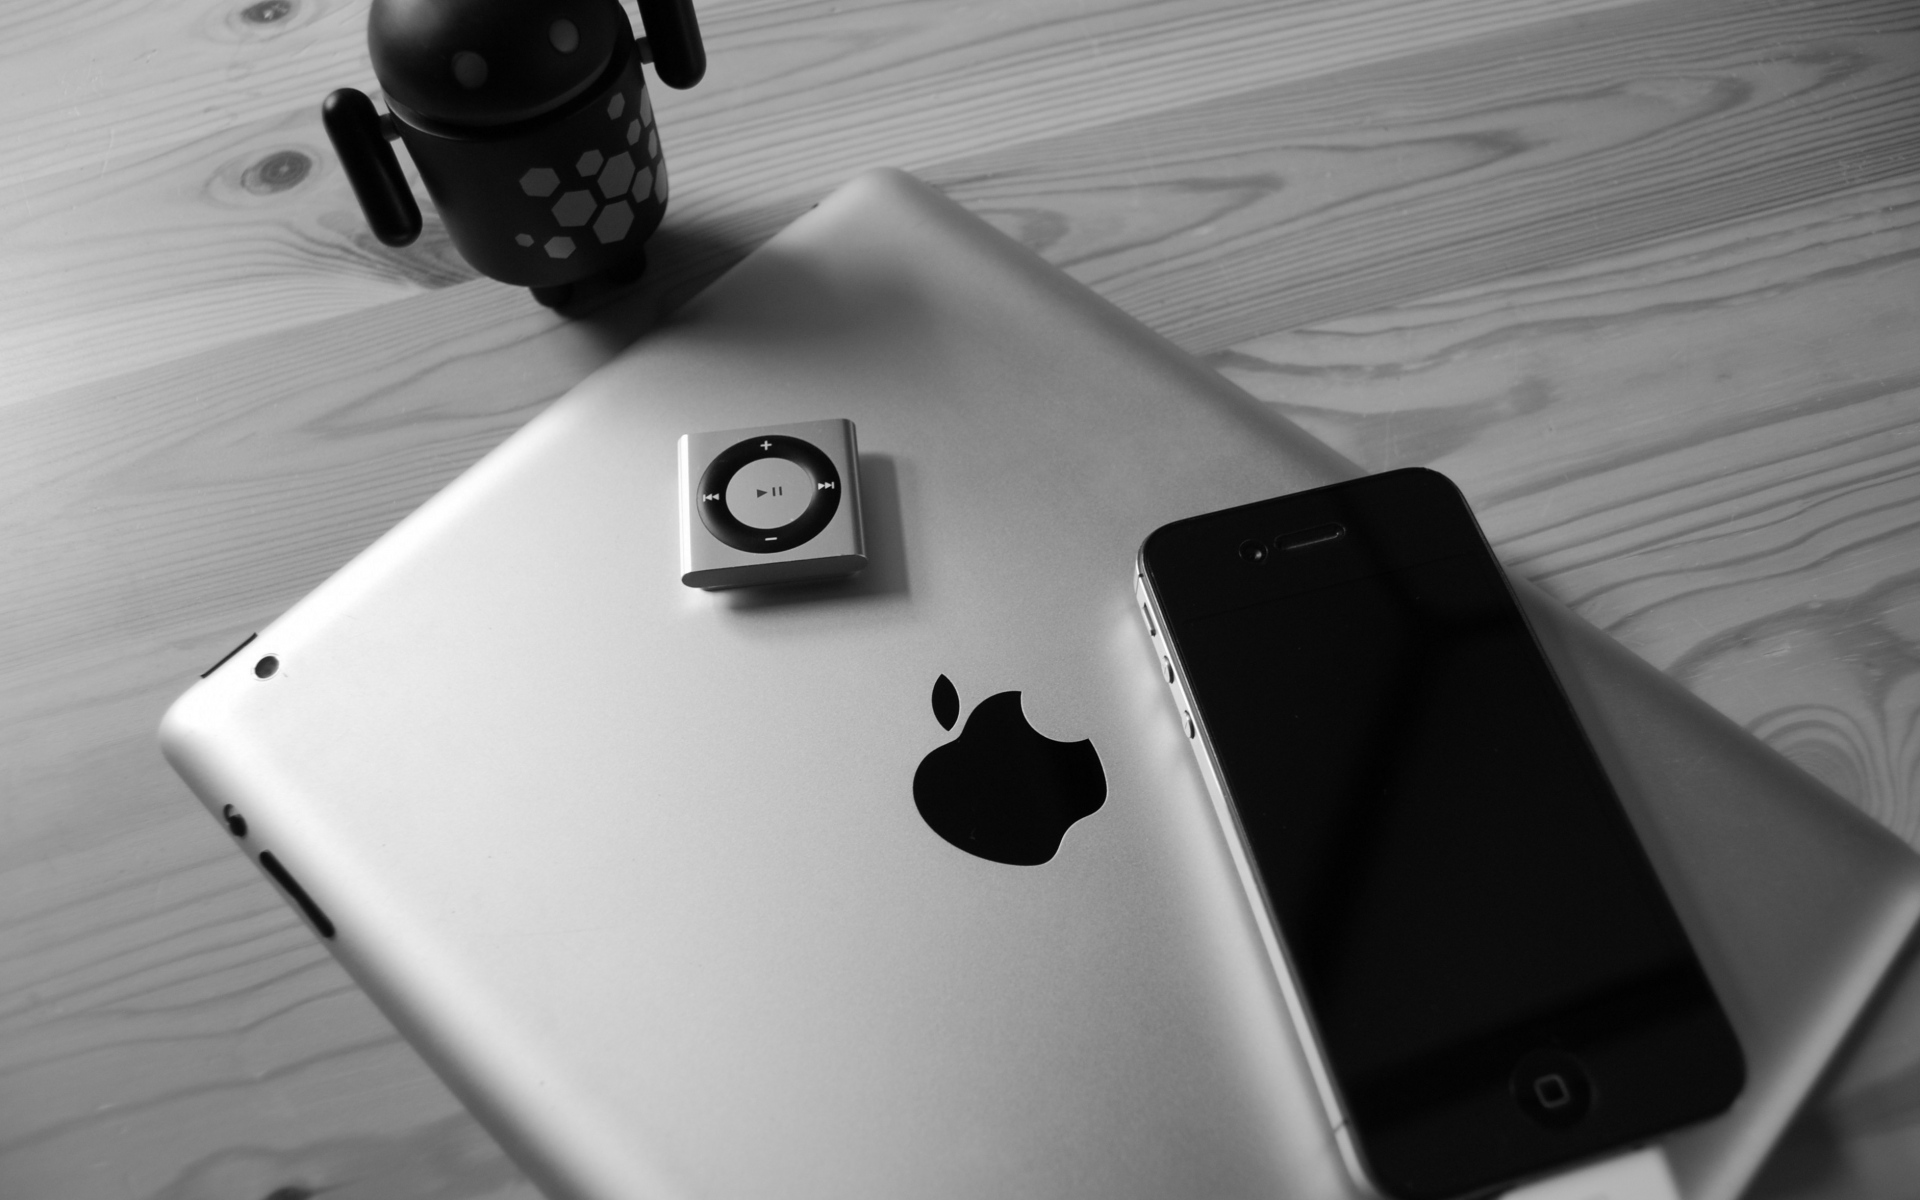 Картинки Ipad, яблоко, iphone, Ipod, андроид фото и обои на рабочий стол